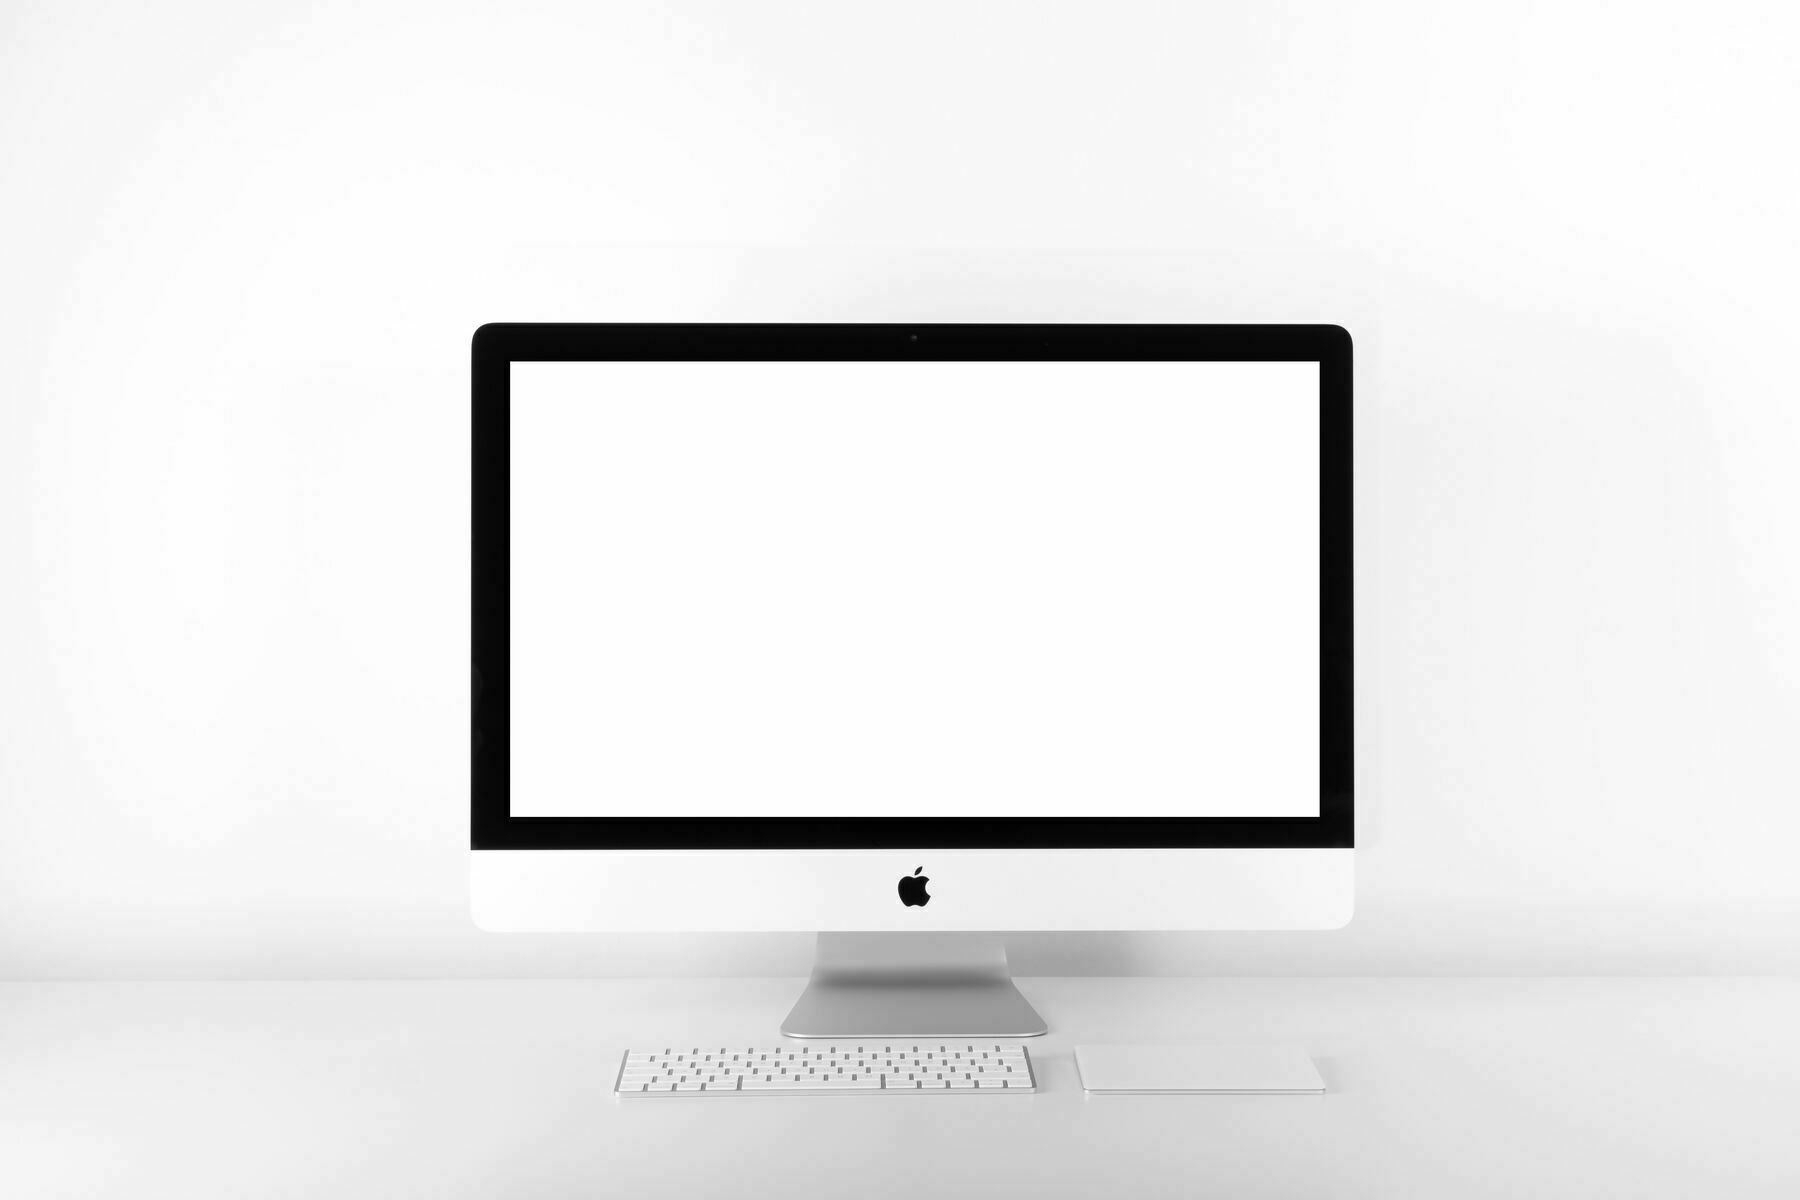 Current iMac design